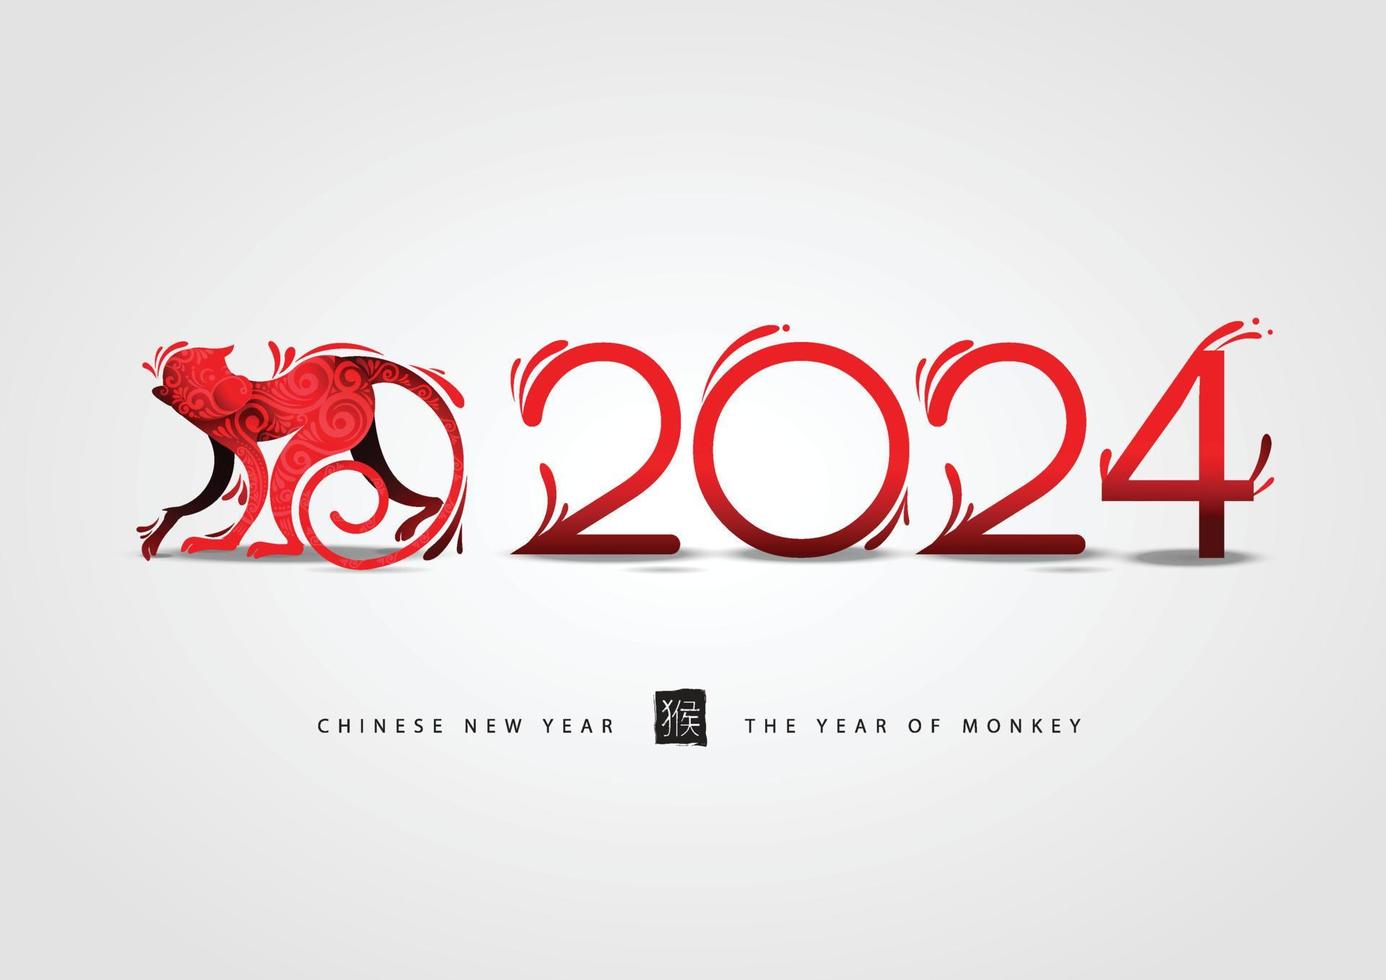 contento chino nuevo año 2024 tarjeta es linternas, degradado mono vector